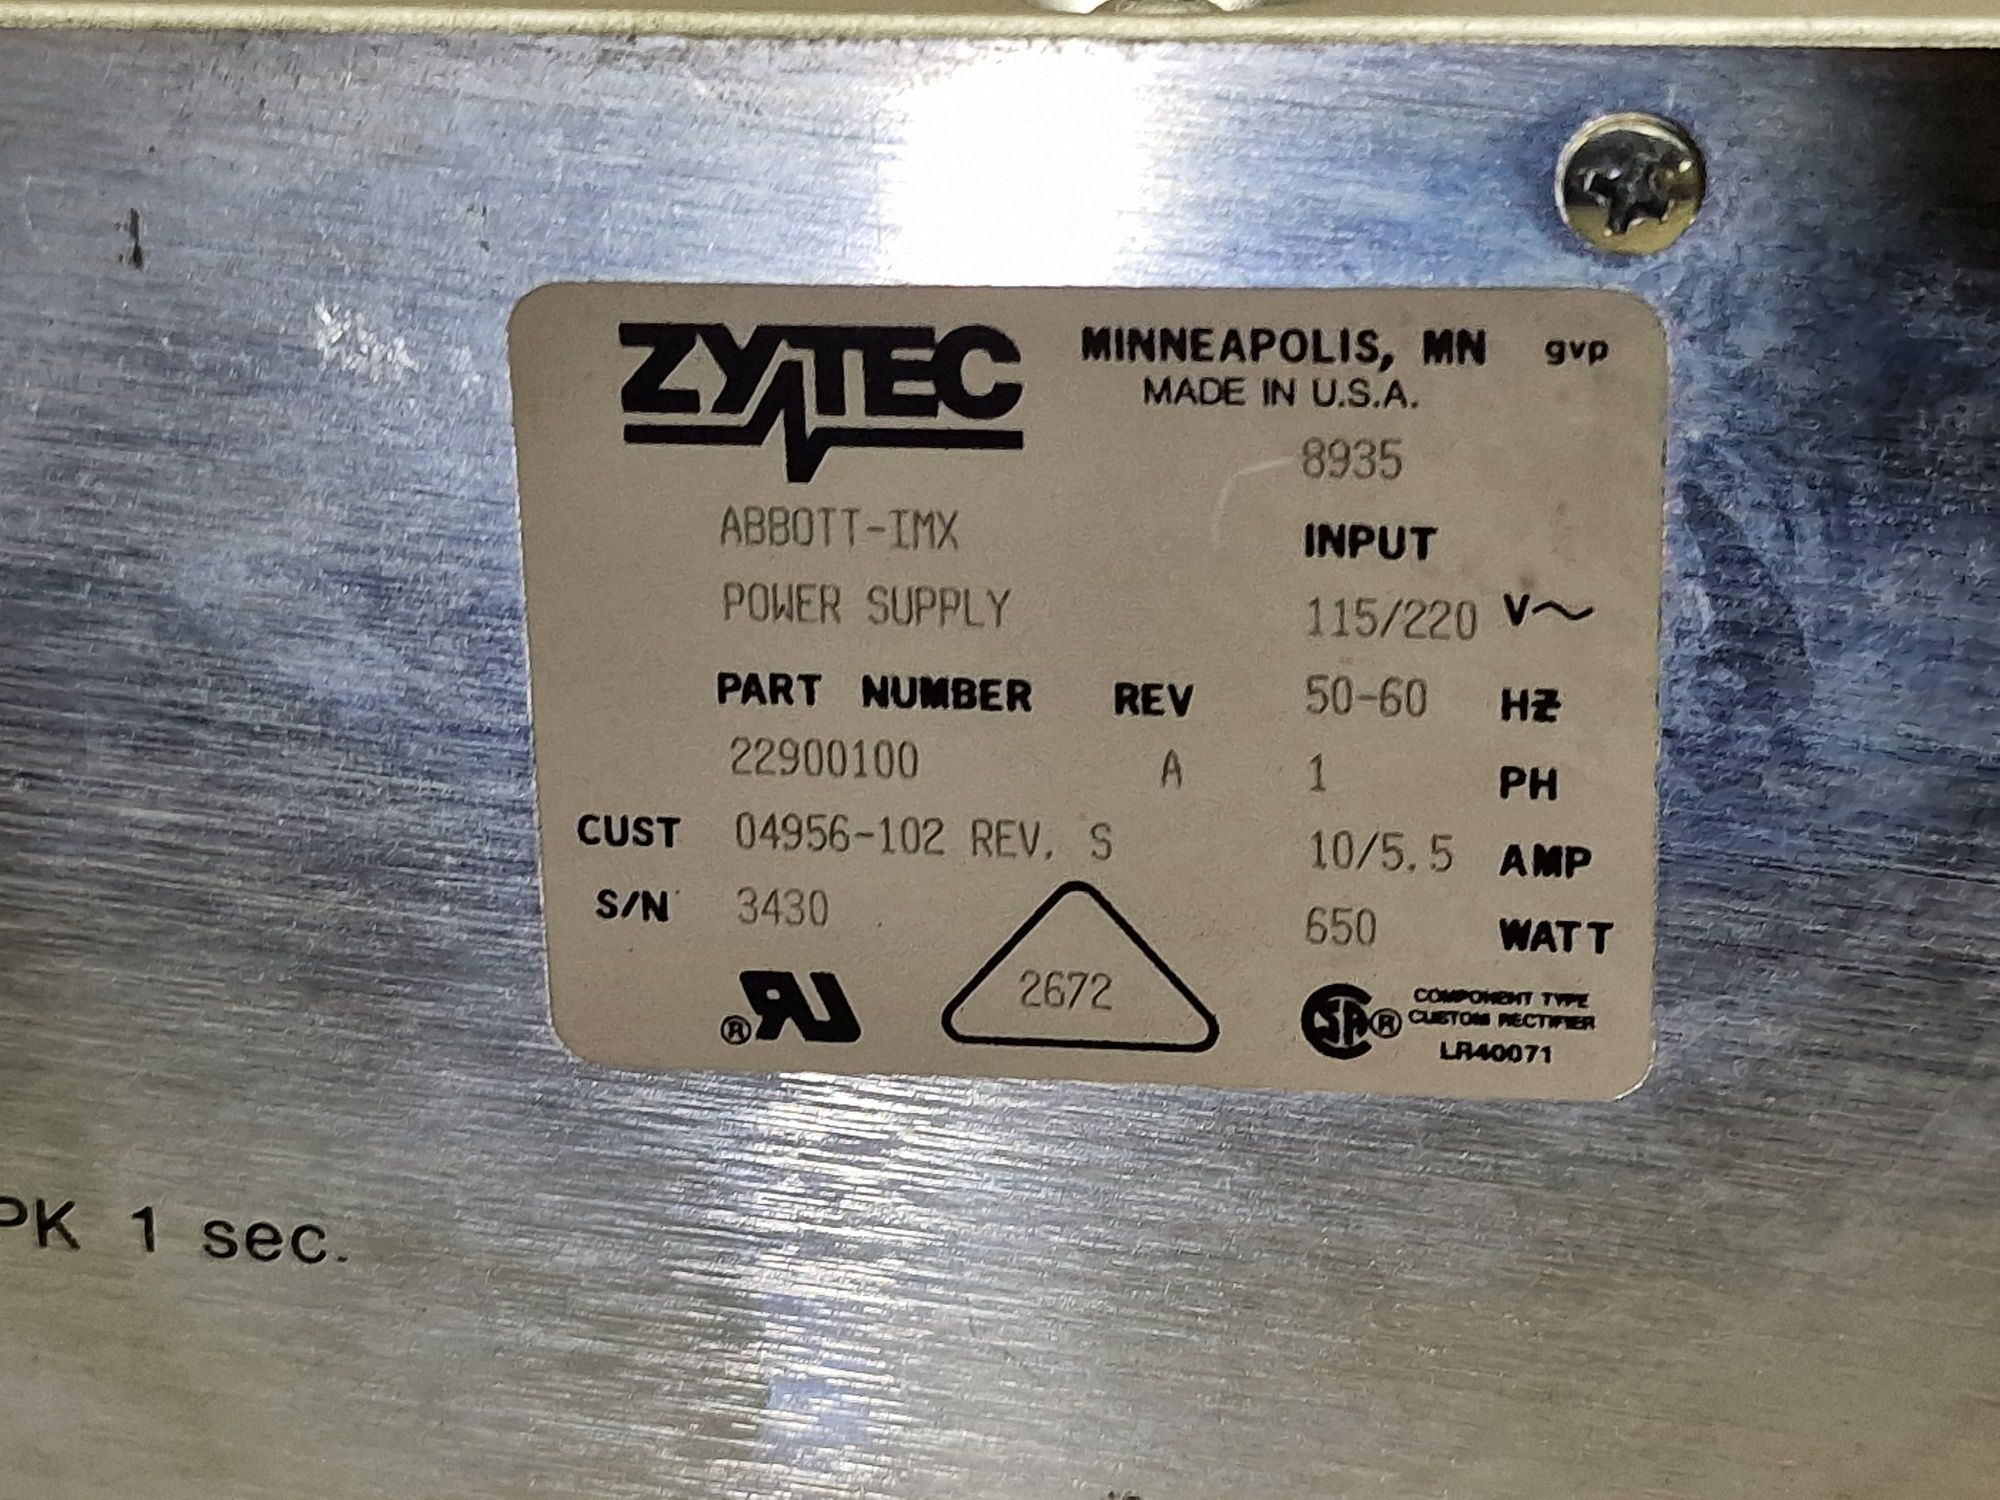 #611   Zasilacz ZYTEC Abbott-imx / Power Supply